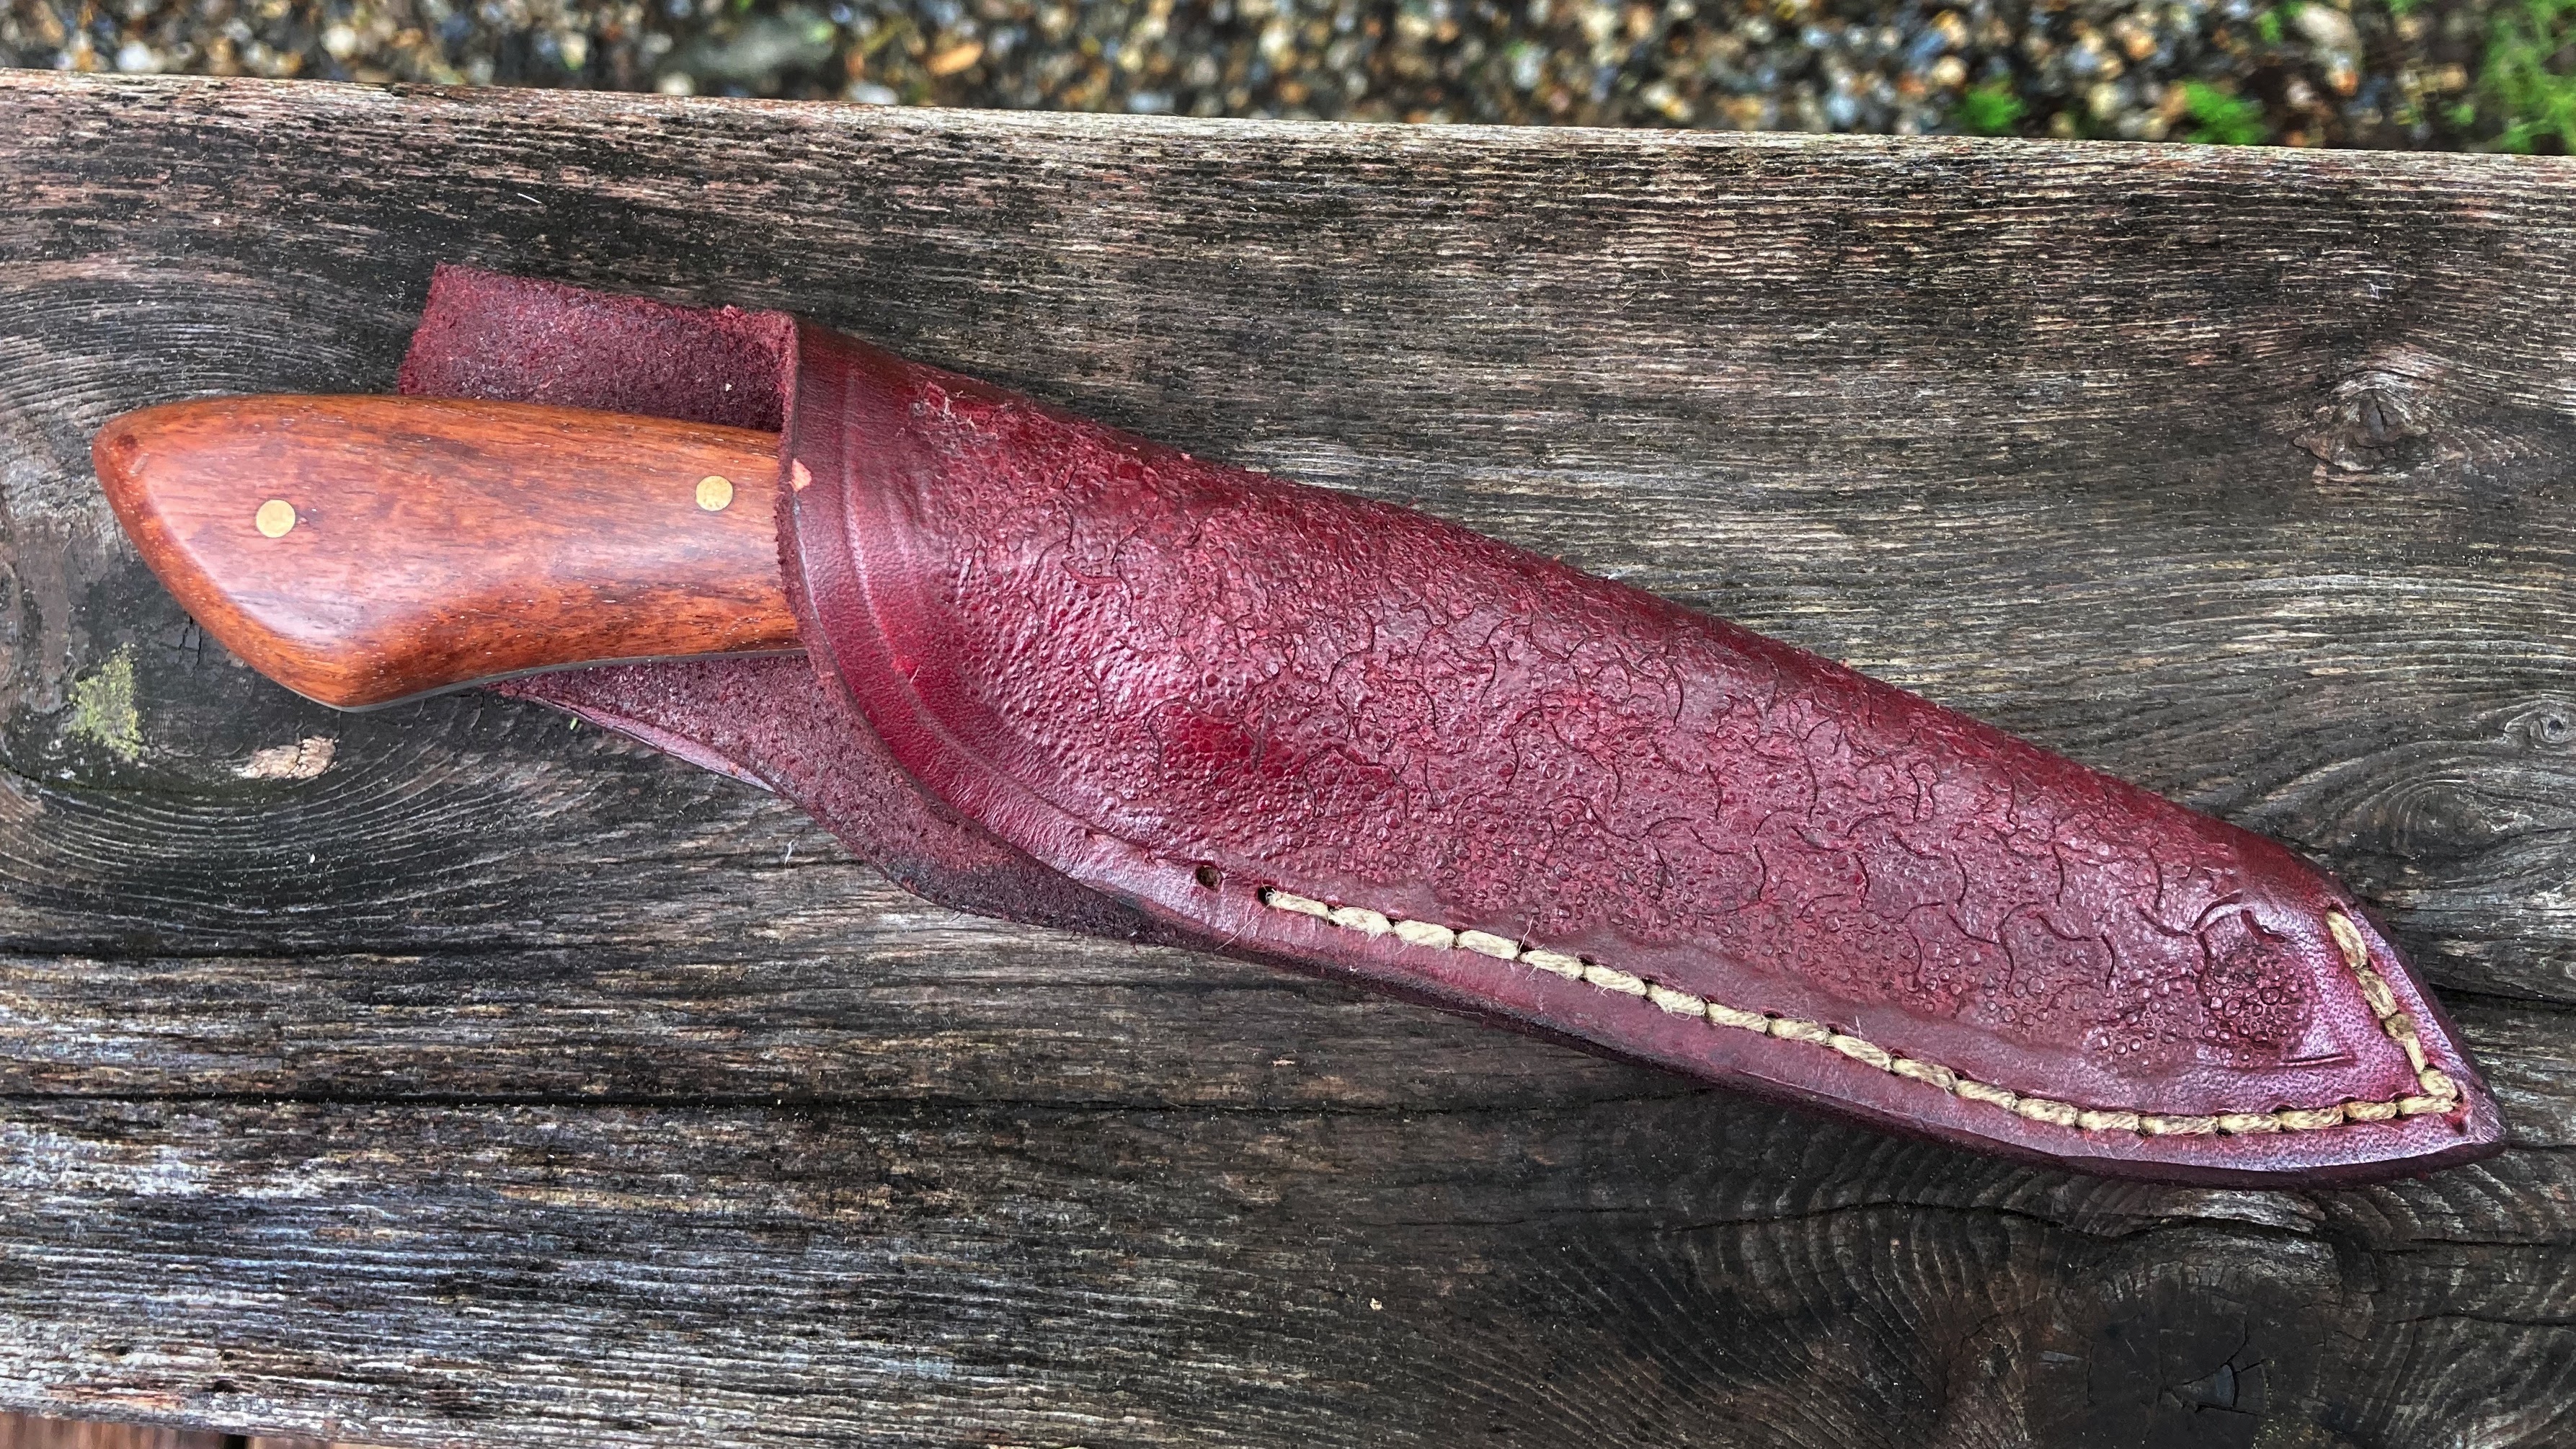 Handmade bushcraft knife sheath by Liam Penn